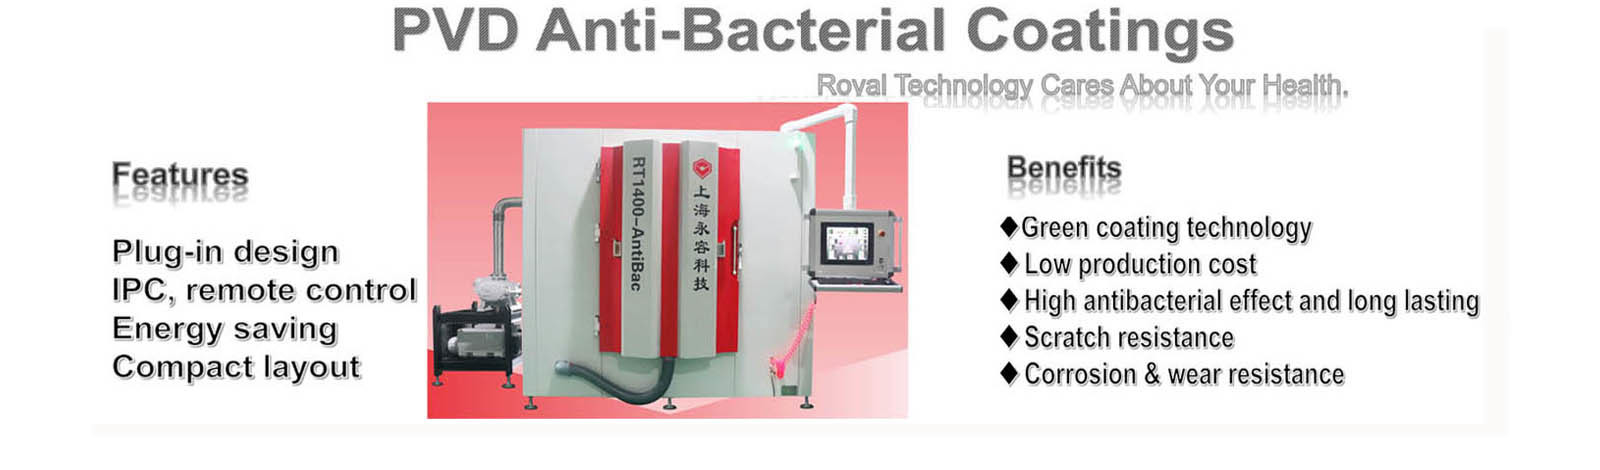 RT1400-AntiBac - Antibacterial Coatings by PVD deposition, antibacterial surfaces on households